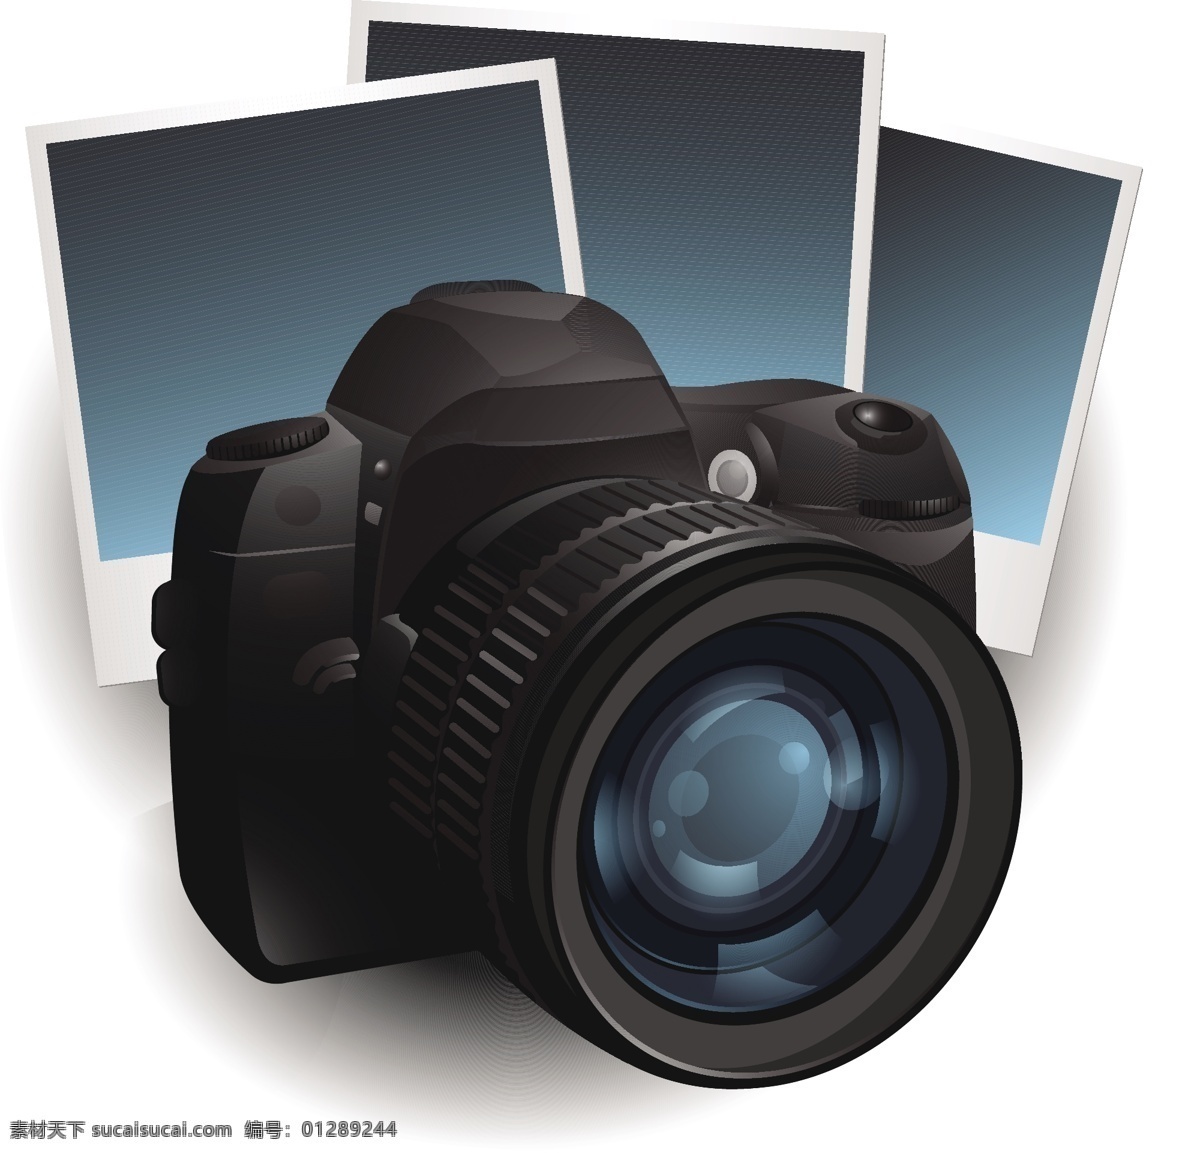 相机设计素材 相机 相机设计 矢量相机 数码相机 数码科技 数码产品 矢量素材 电脑数码 生活百科 白色